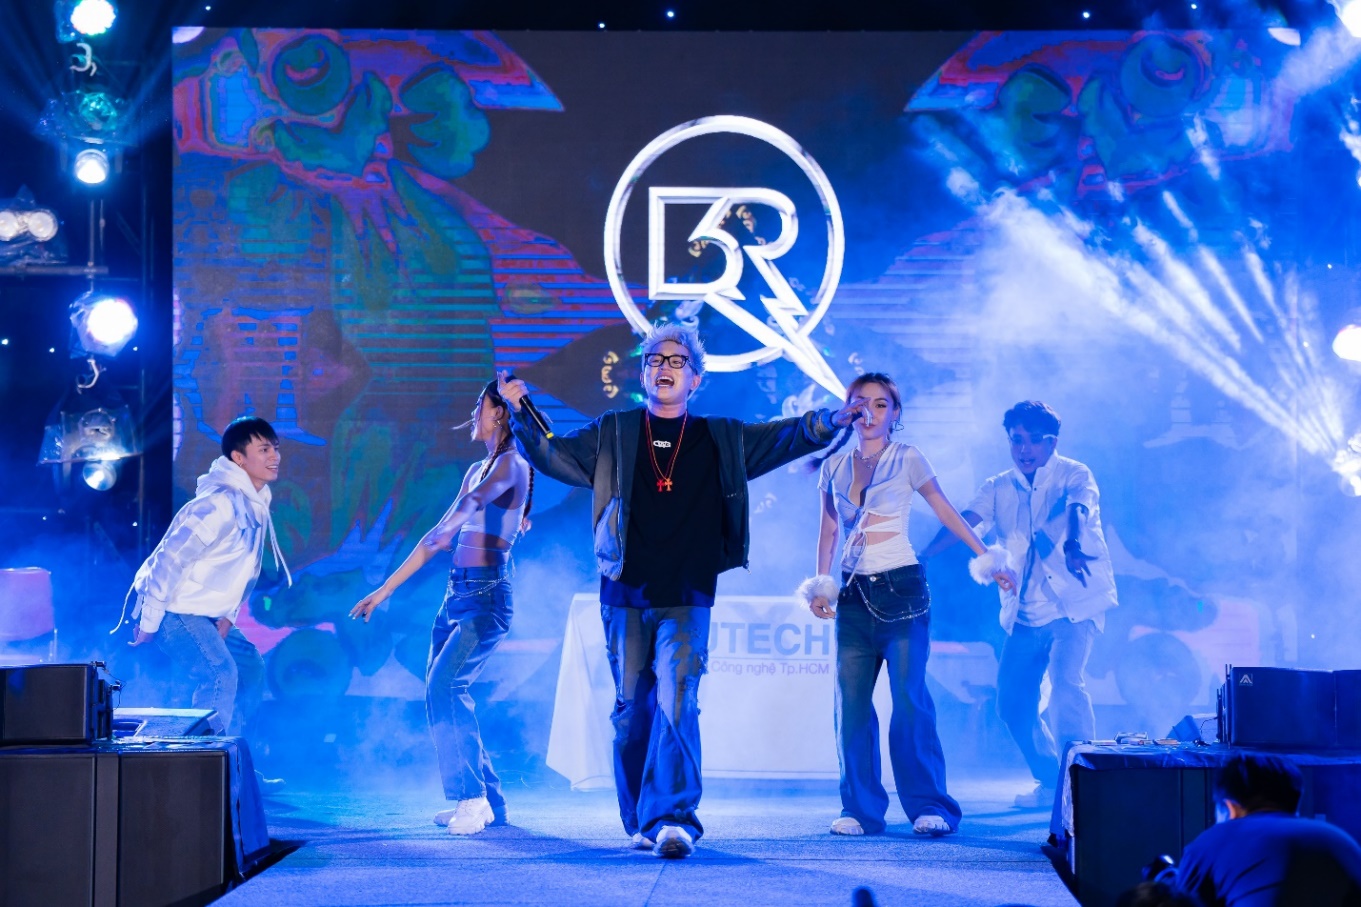 Đạt G, B Ray, Masew xuất hiện “cực ngầu”, khuấy động sân khấu đại nhạc hội Sóng 2023 tại HUTECH - Ảnh 2.